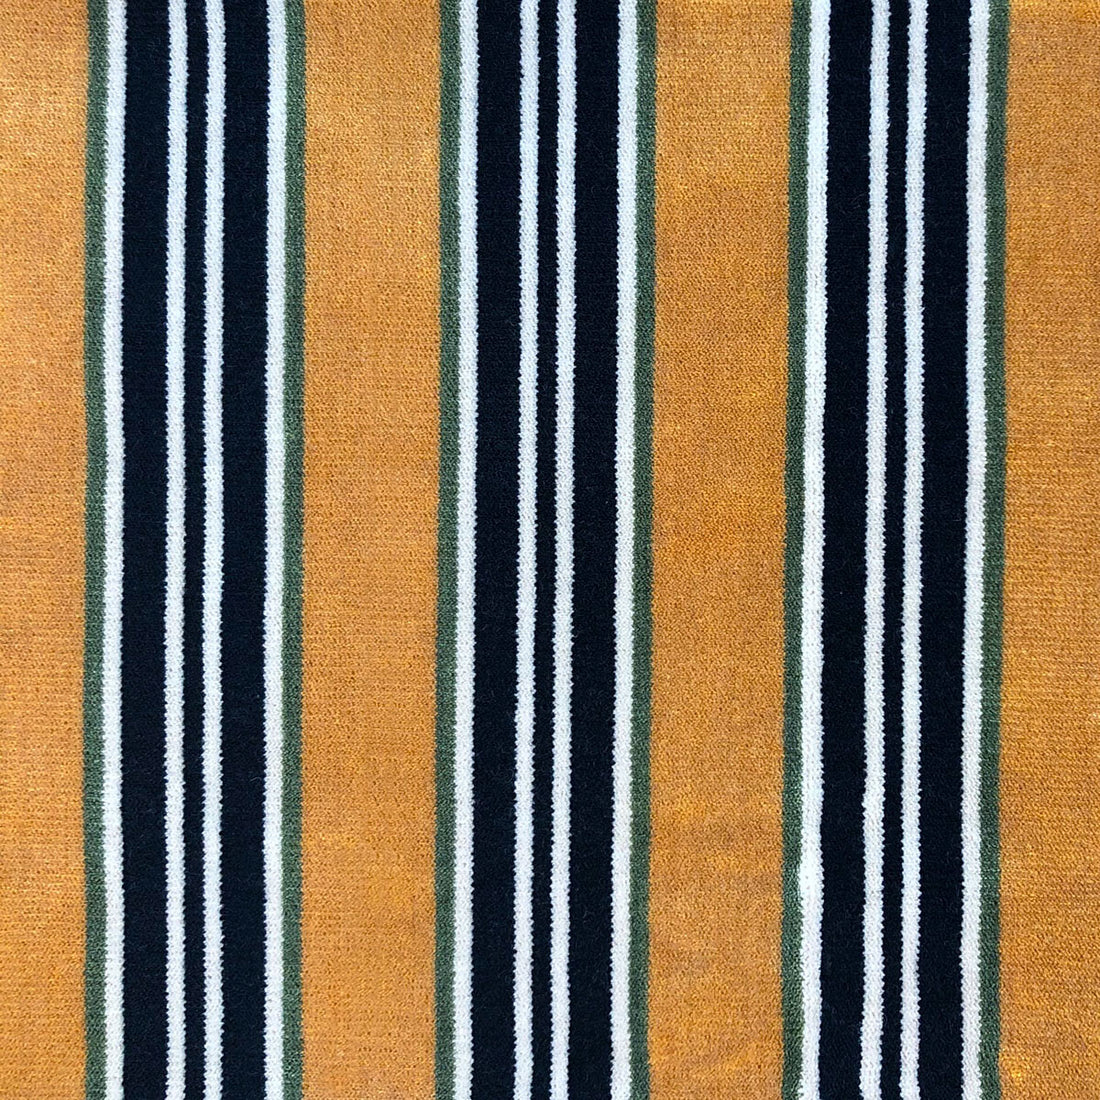 Tucha fabric in fondo oro/verde color - pattern LCT1051.002.0 - by Gaston y Daniela in the Lorenzo Castillo VI collection